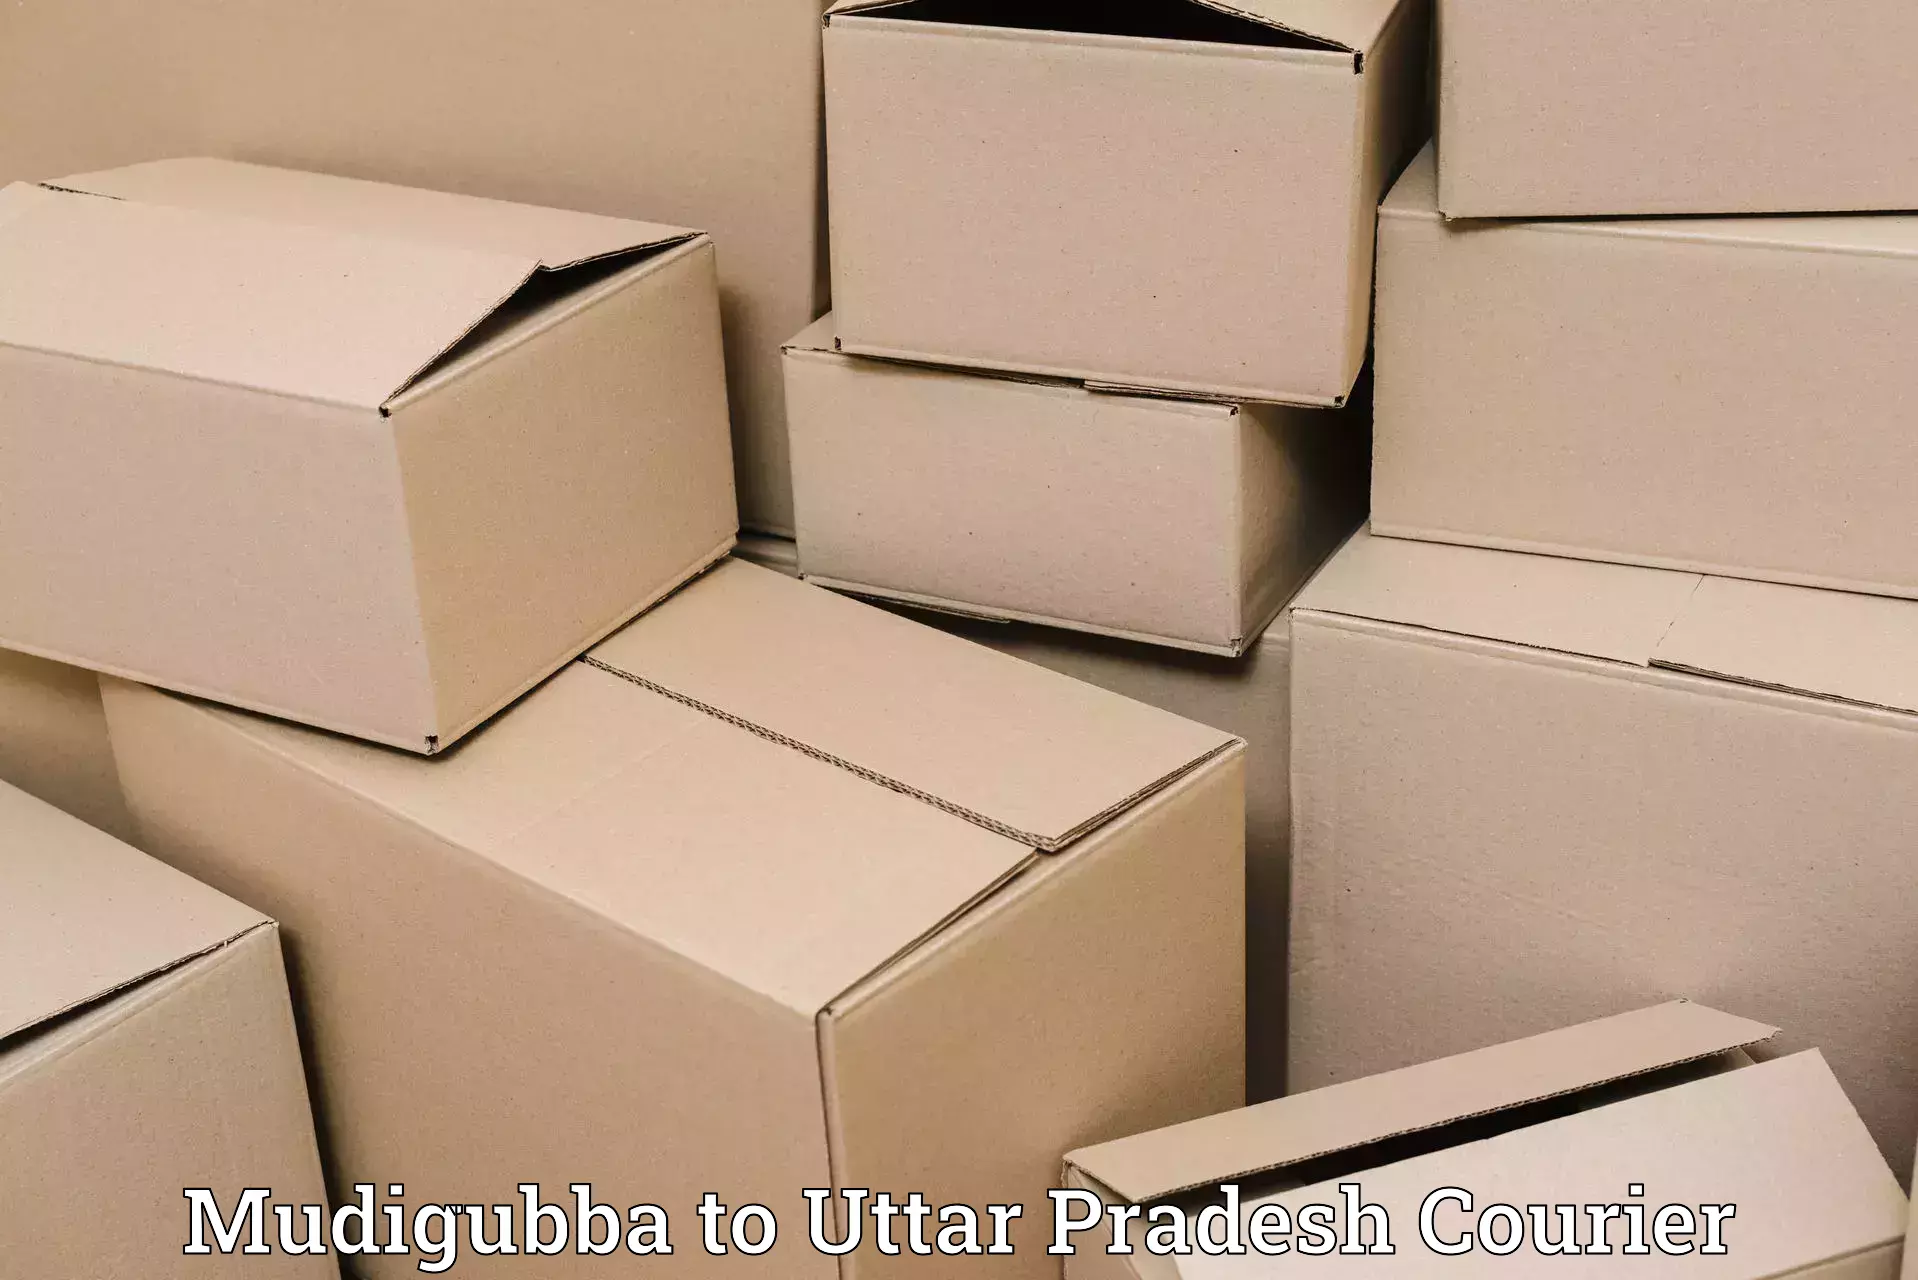 Urgent courier needs Mudigubba to Madhuban